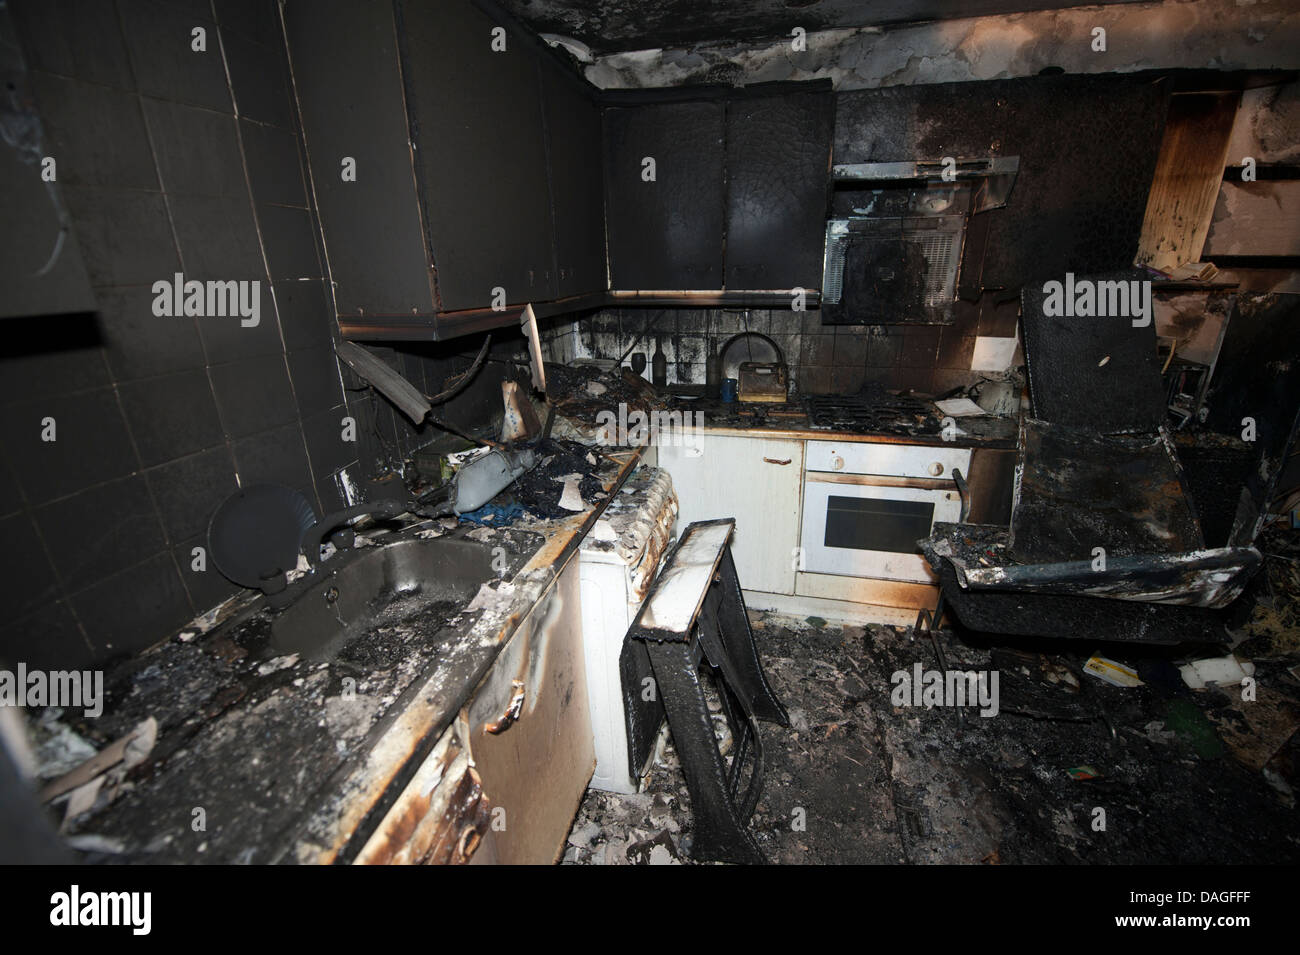 Cuisinière Cuisine grave incendie détruit brûlé Banque D'Images